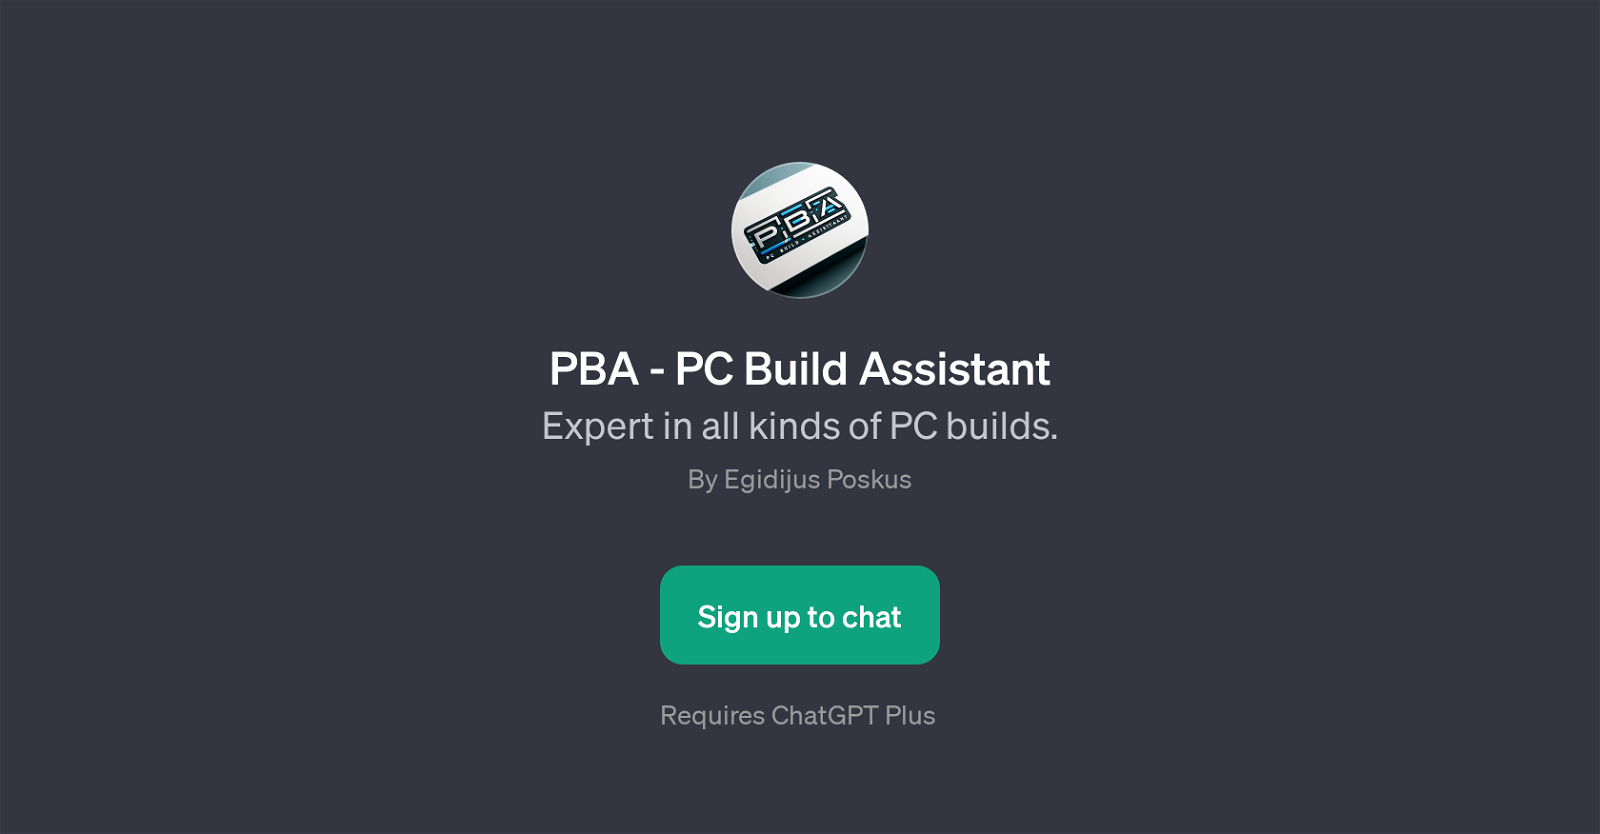 PBA - PC Build Assistant website